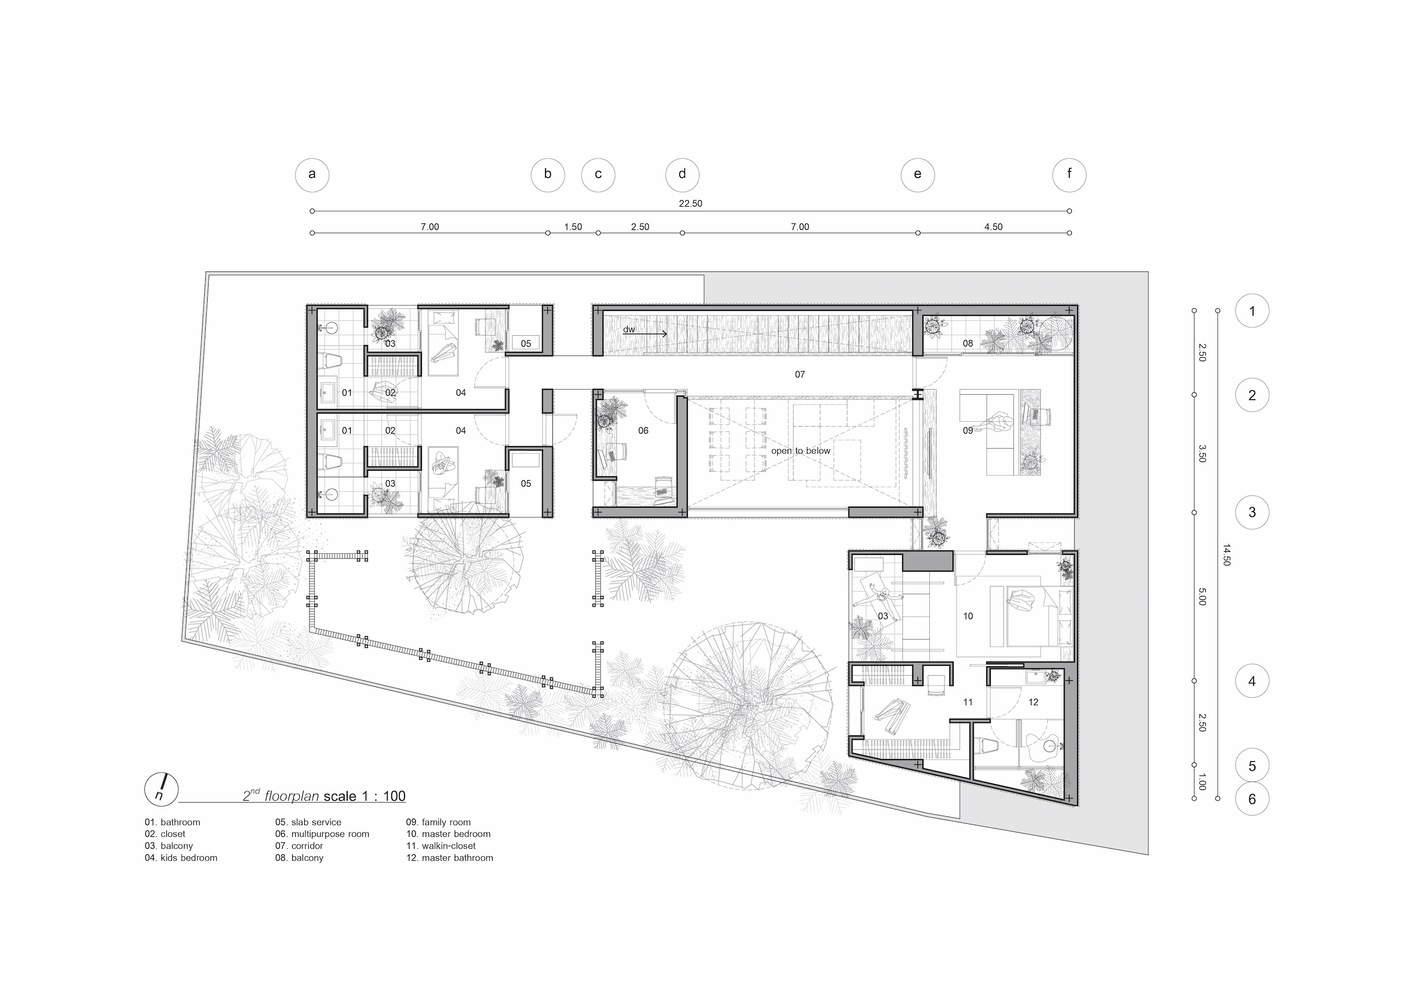 Greenbox Design,别墅设计案例,别墅设计,别墅设计方案,原木色别墅,庭院别墅,450㎡,泰国,曼谷